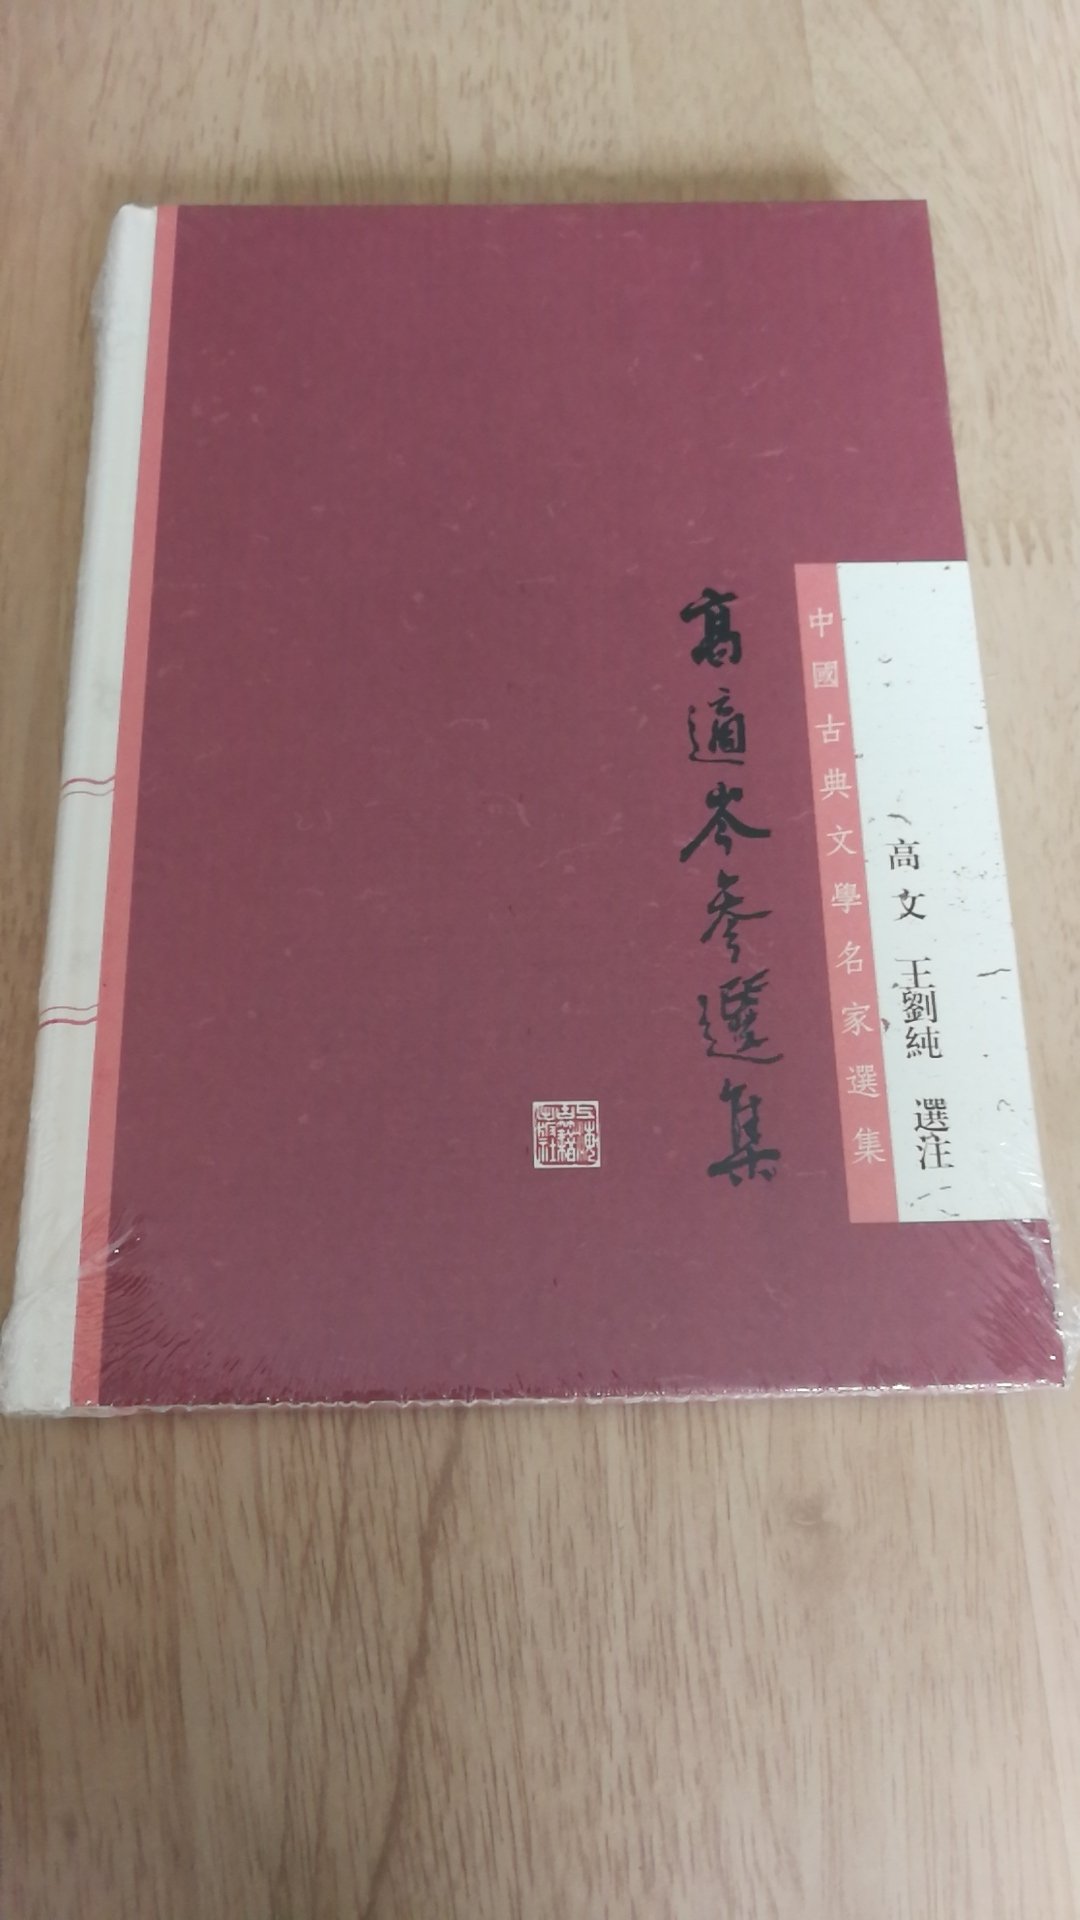 上海古籍出版社推出的中国古典文学名家选集，精装16开，书脊锁线纸质优良，排版印刷得体大方，活动期间价格实惠，送货速度快，非常满意。